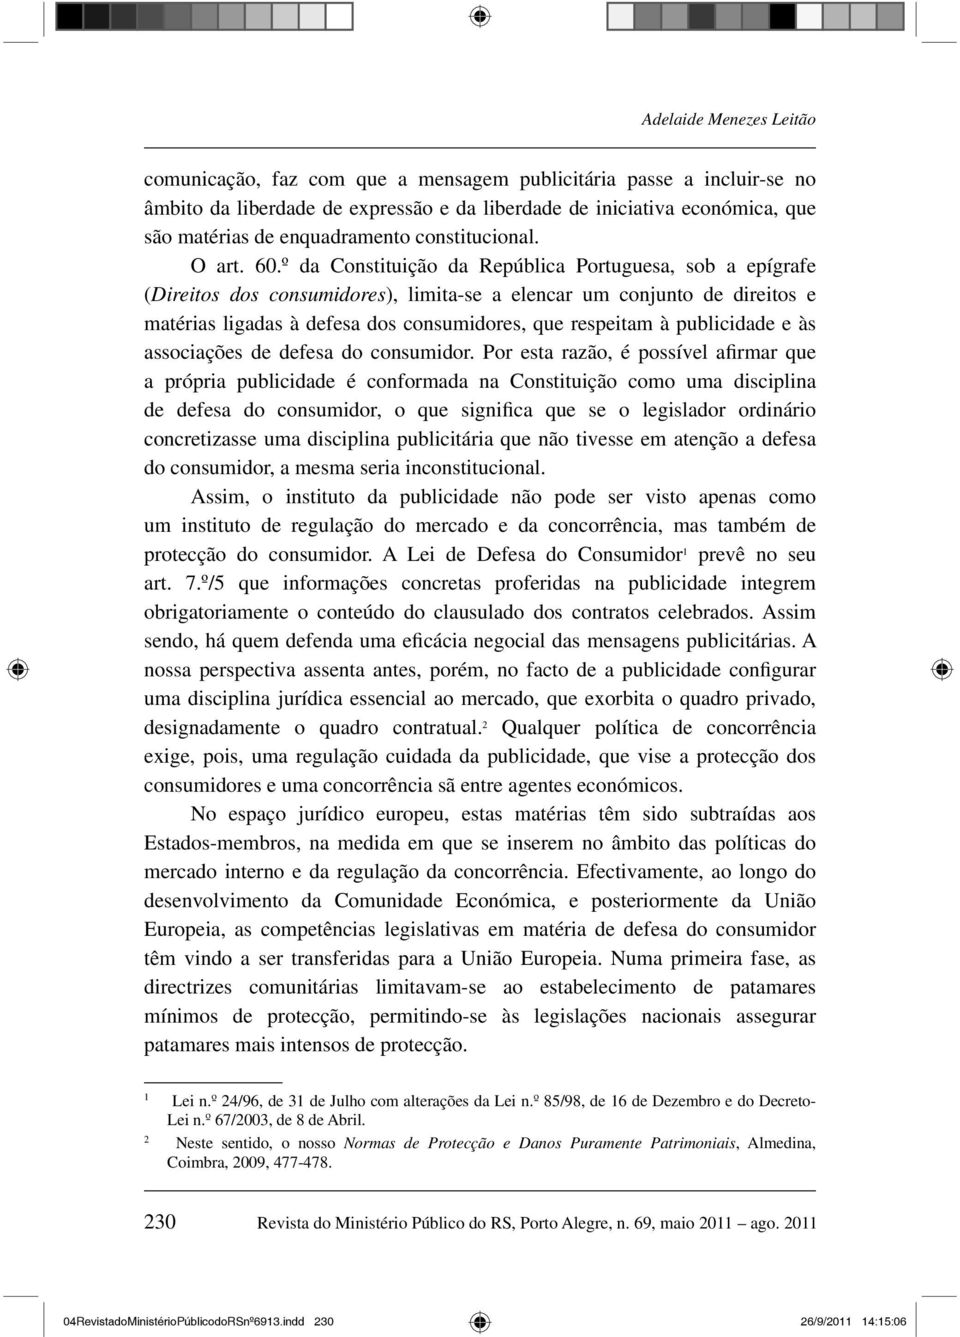 º da Constituição da República Portuguesa, sob a epígrafe (Direitos dos consumidores), limita-se a elencar um conjunto de direitos e matérias ligadas à defesa dos consumidores, que respeitam à